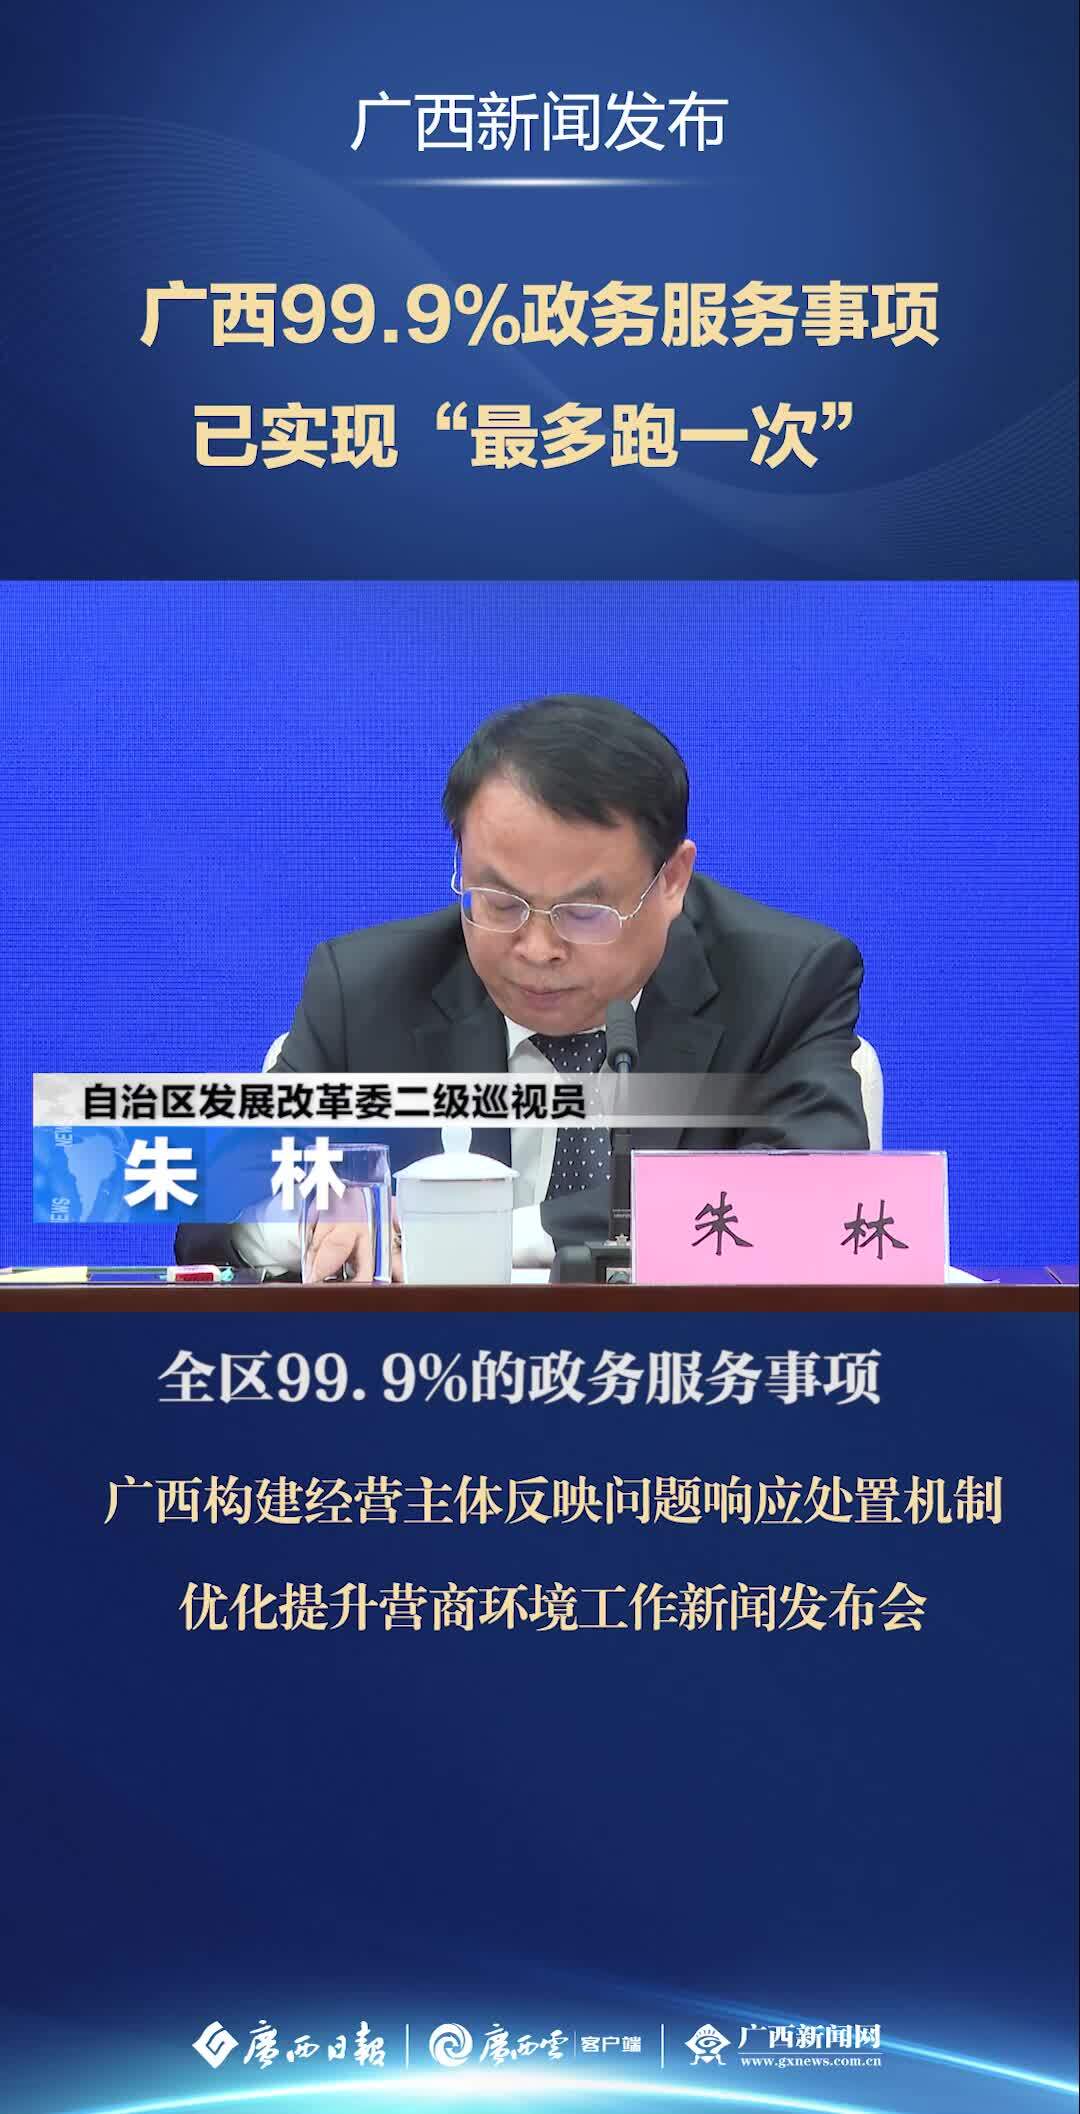 广西新闻网首页手机版广西云客户端广西新闻网